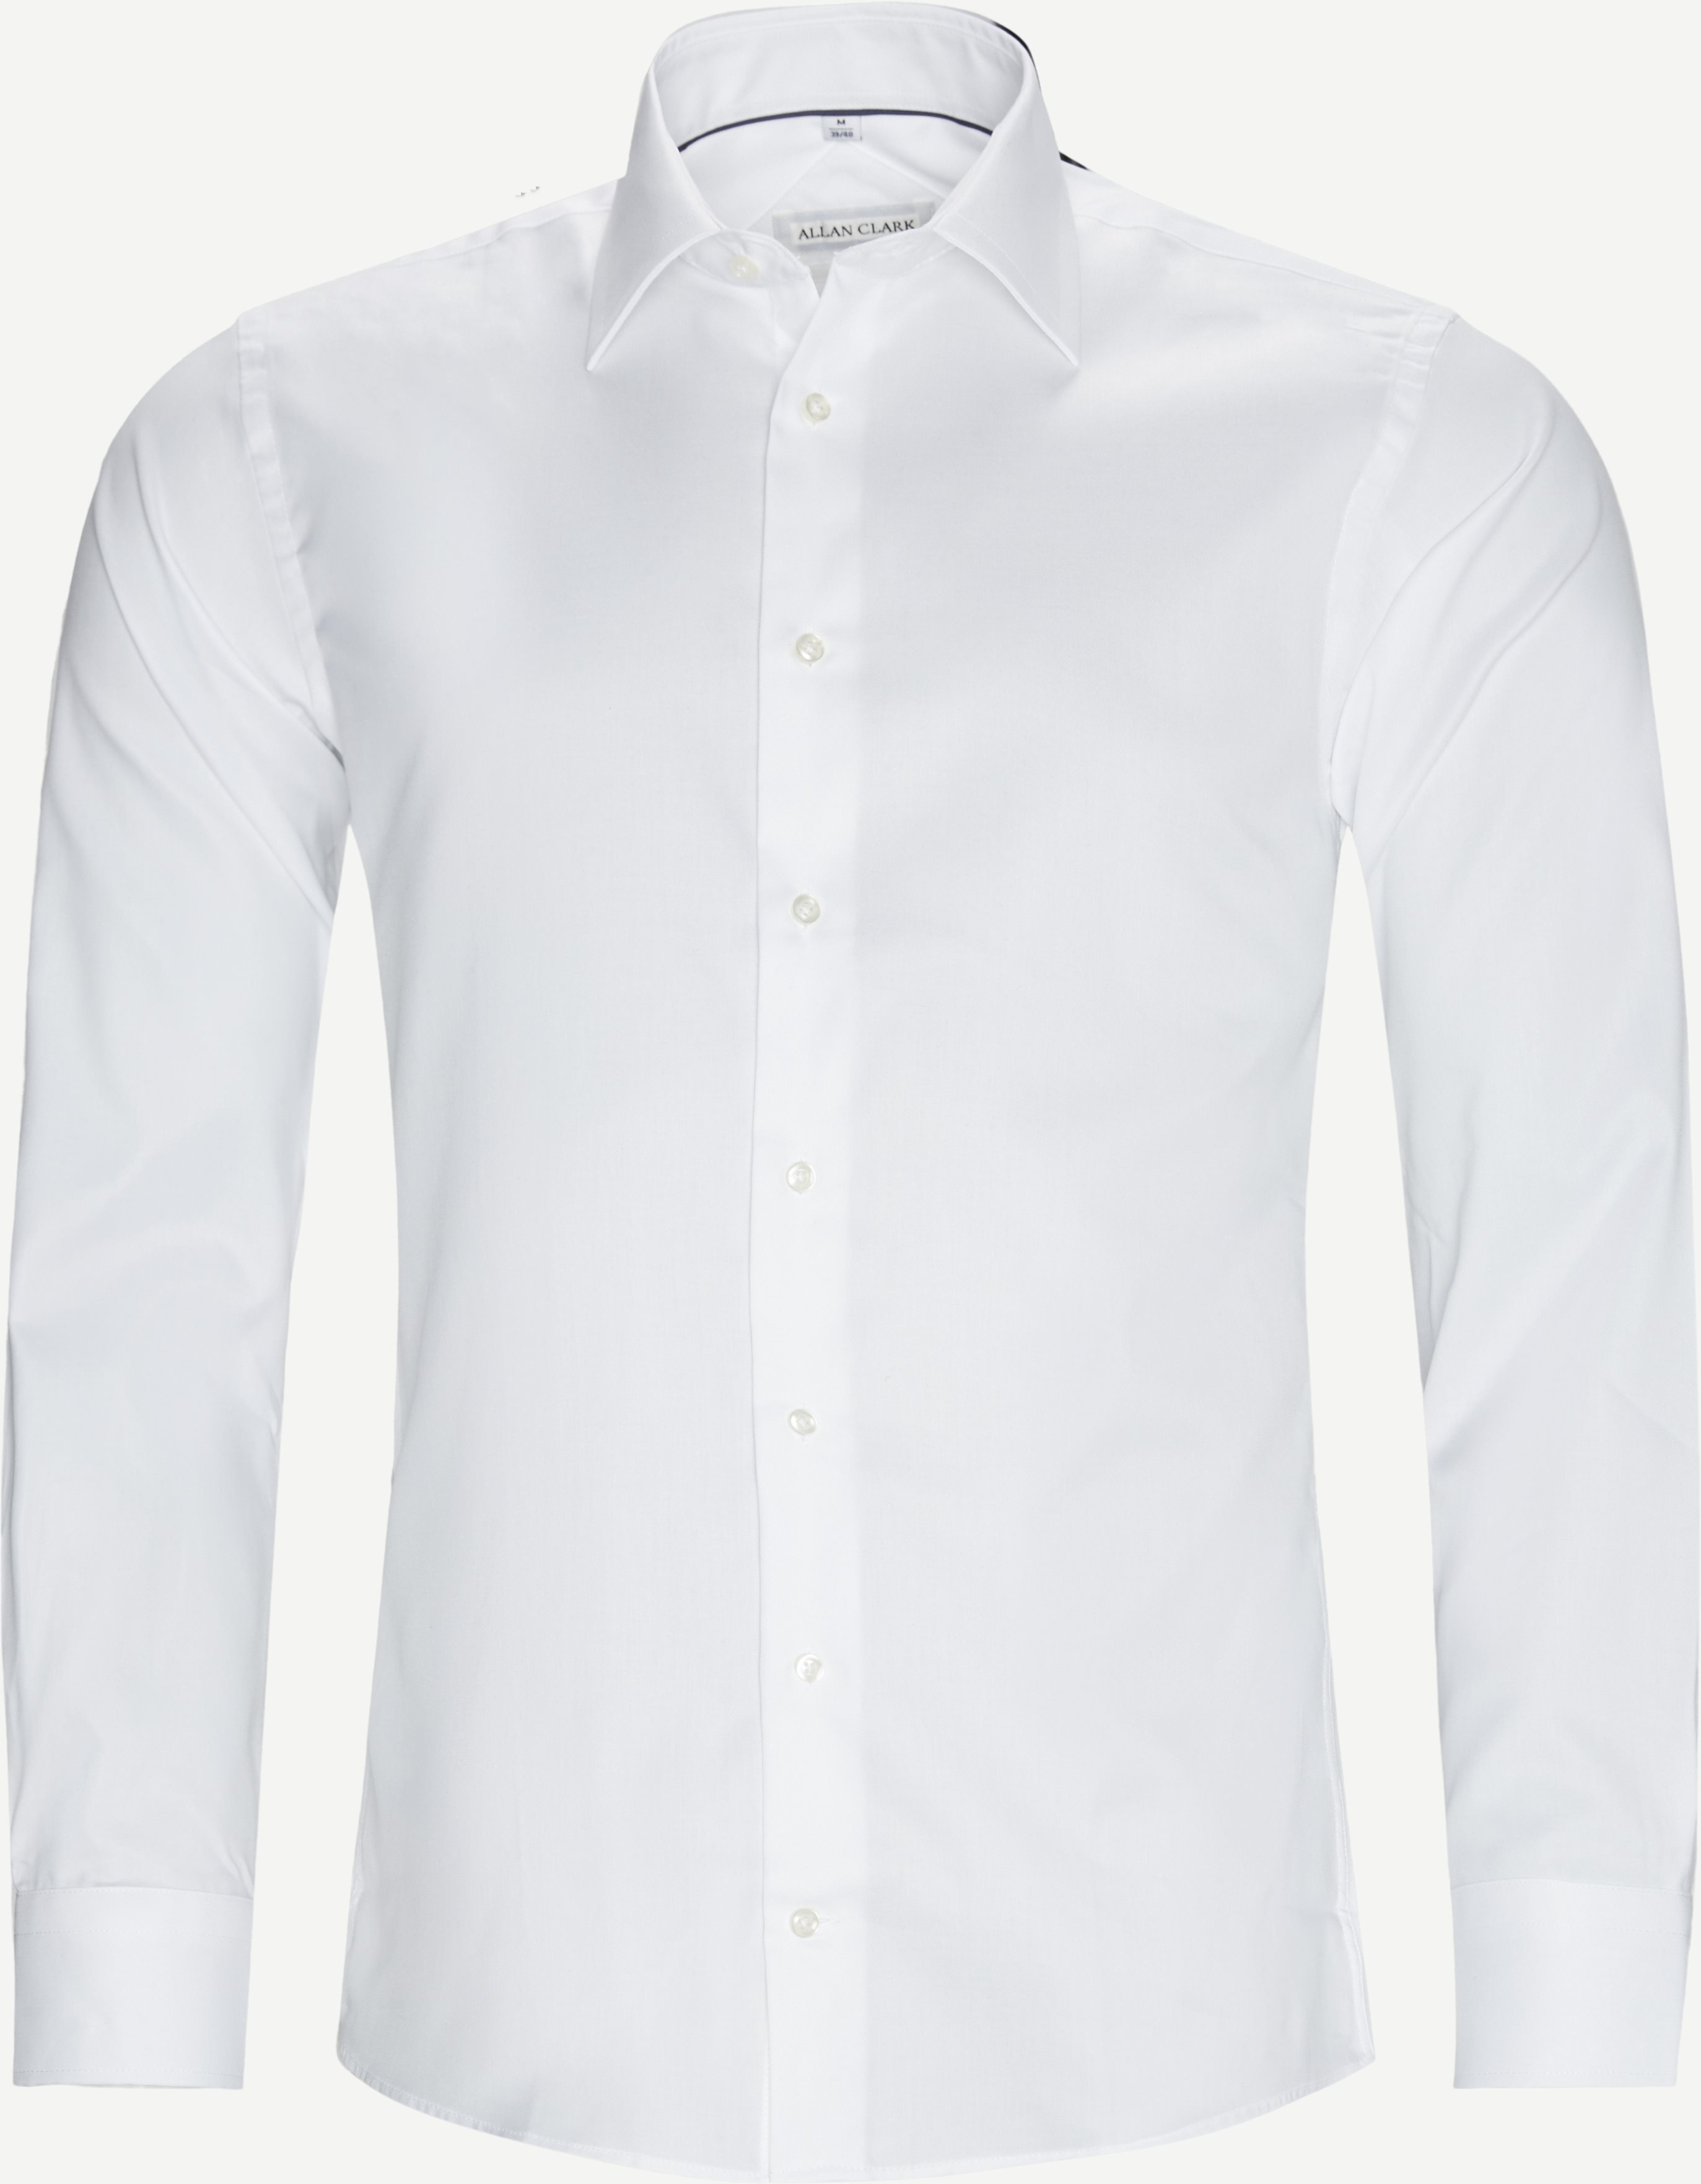 Nania Skjorte - Skjorter - Hvid